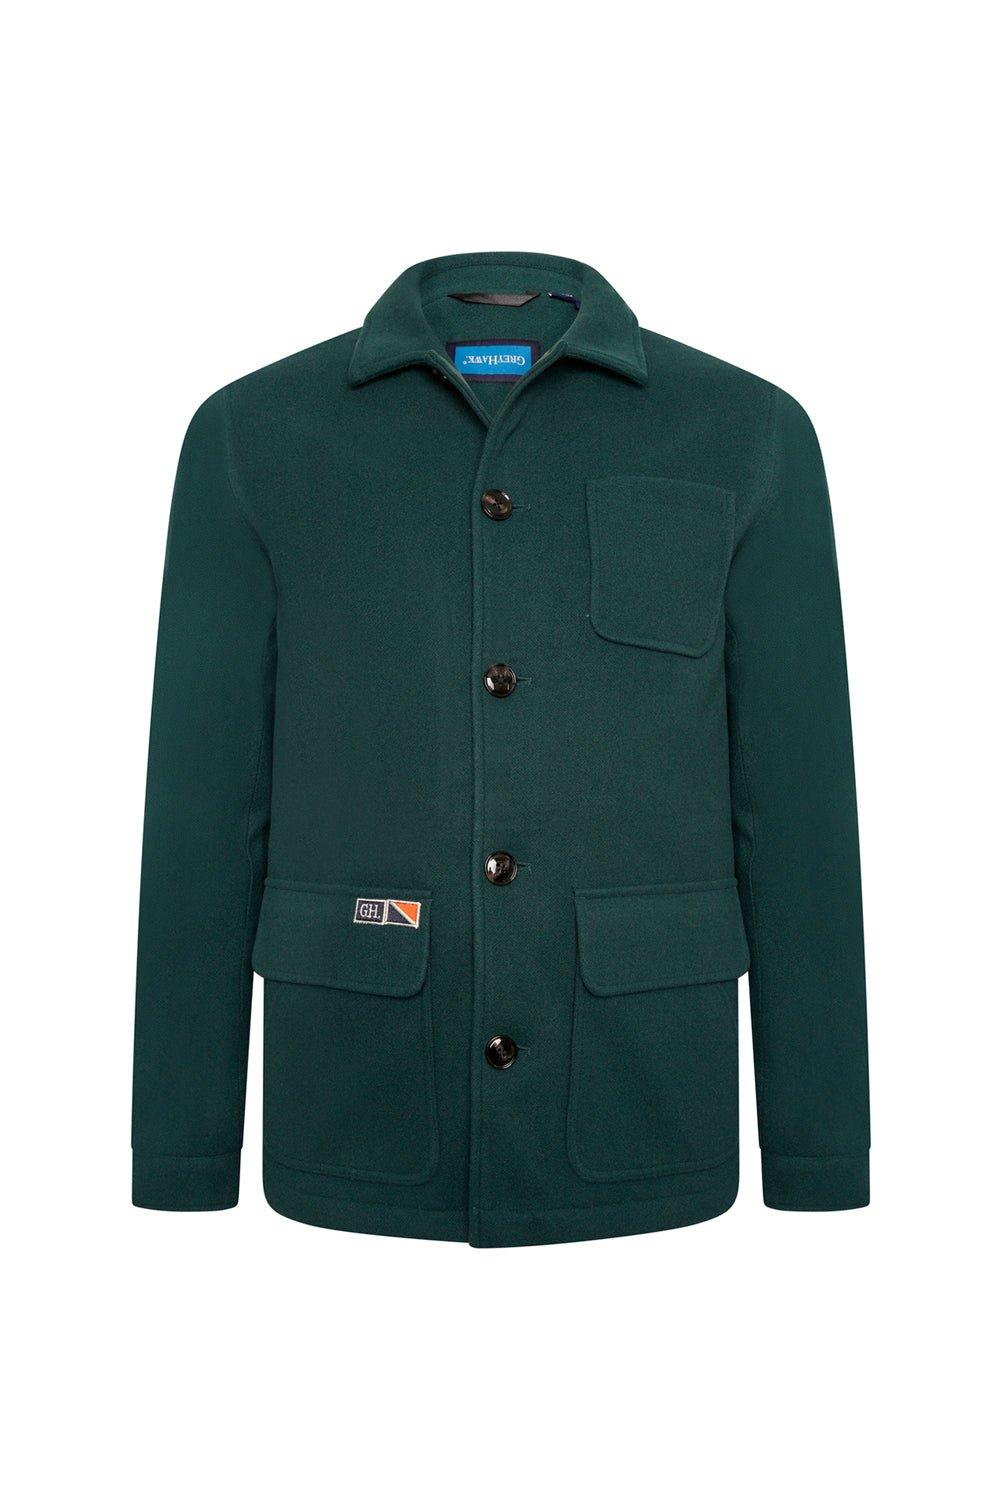 Серая куртка в стиле спецодежды Hawk Grey Hawk, зеленый